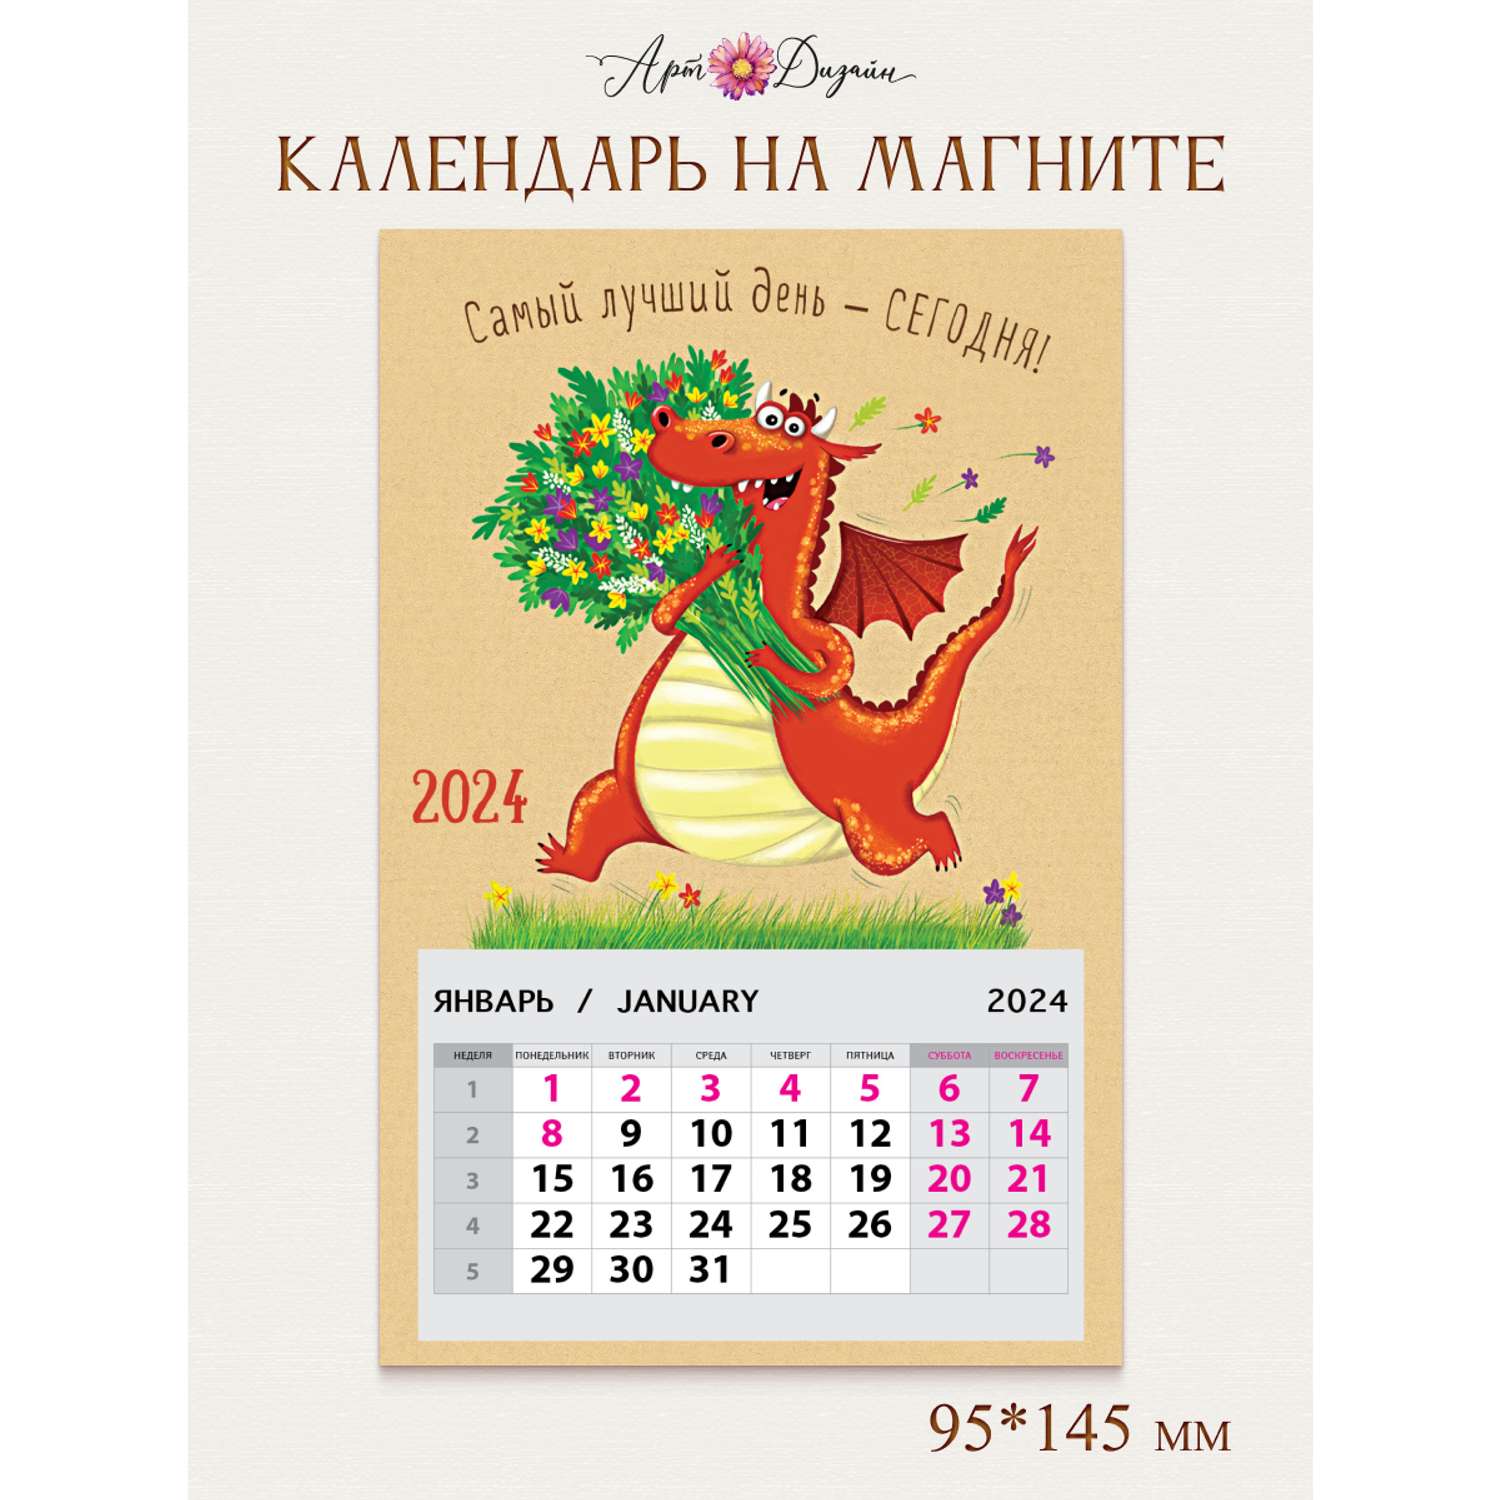 Календарь на магните Арт и Дизайн 0611.053 - фото 1